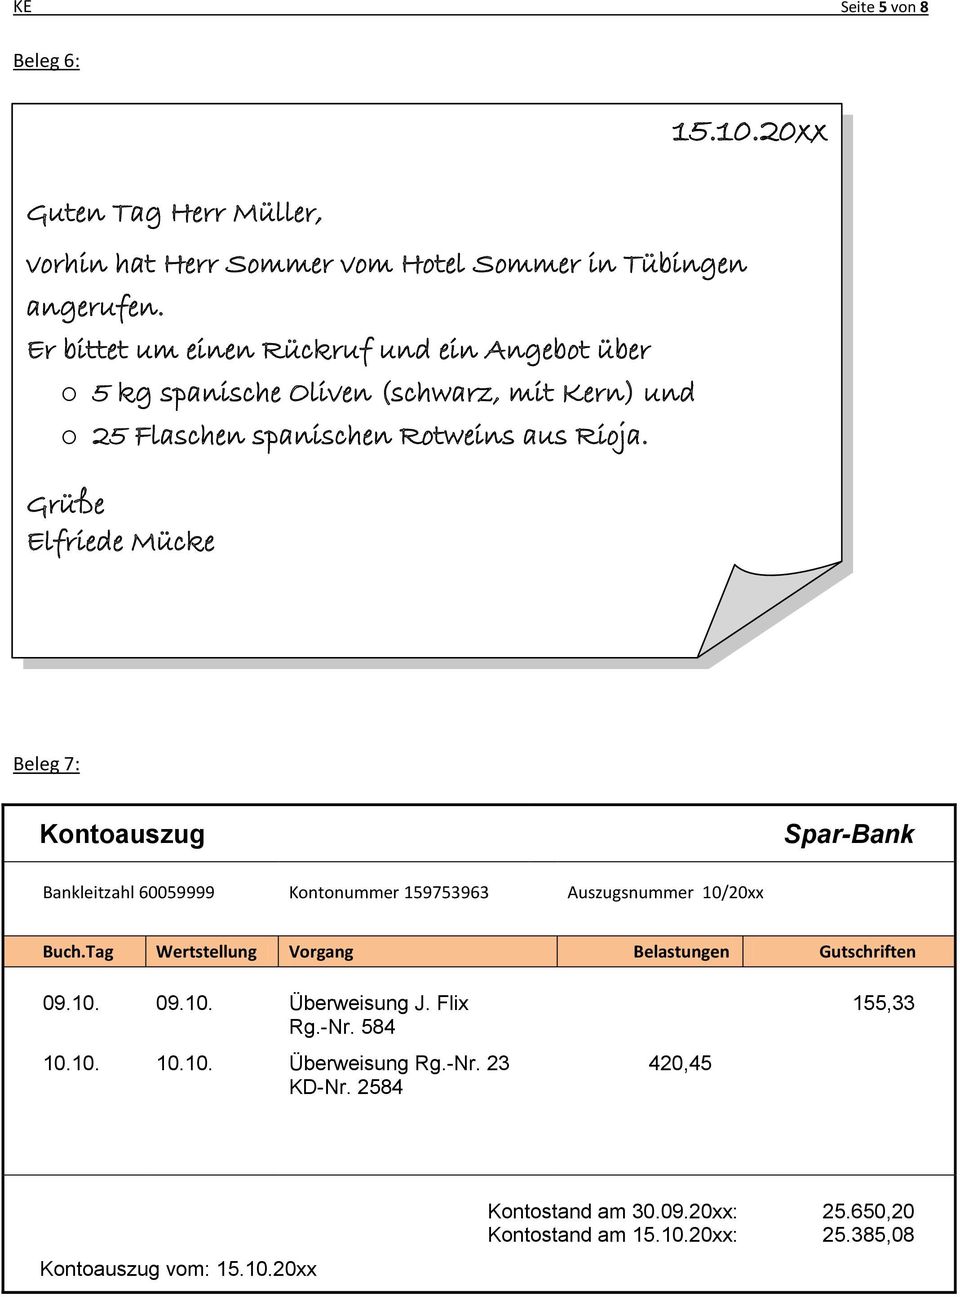 Grüße Elfriede Mücke Beleg 7: Kontoauszug Spar-Bank Bankleitzahl 60059999 Kontonummer 159753963 Auszugsnummer 10/20xx Buch.